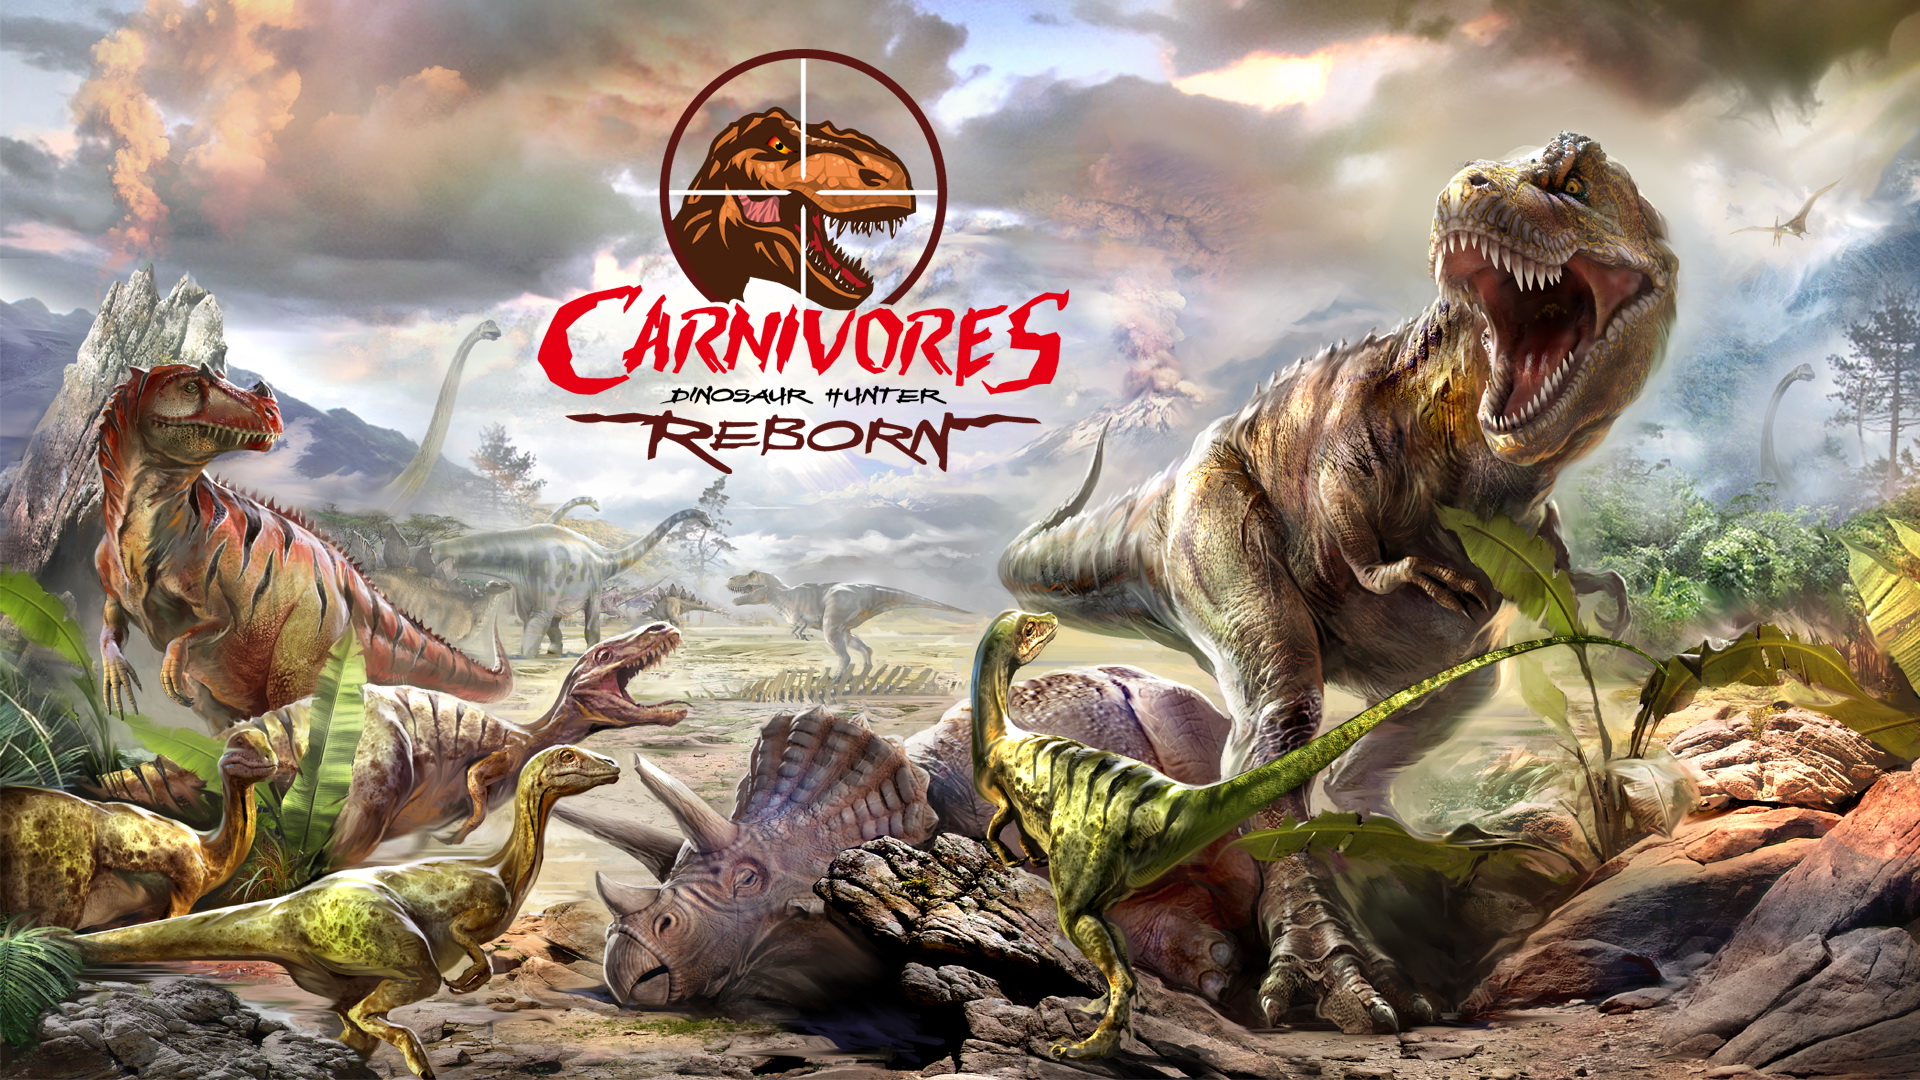 Carnivores dinosaur hunter reborn steam фото 13